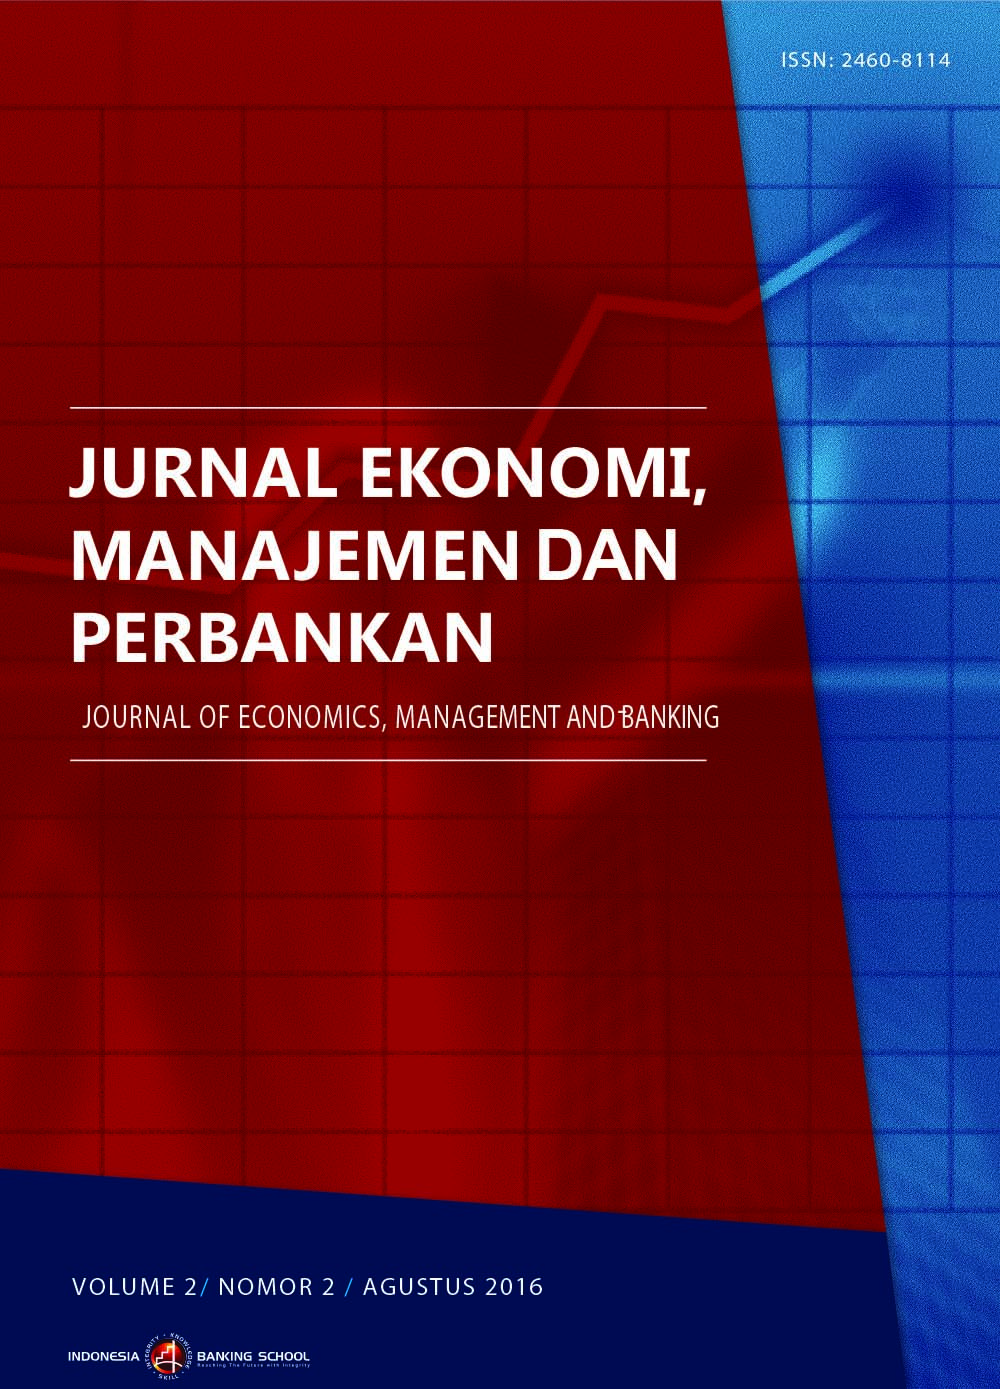 					View Vol. 2 No. 2 (2016): Jurnal Ekonomi, Manajemen dan Perbankan (Journal of Economics, Management and Banking), Volume 2 No. 2, Agustus 2016
				